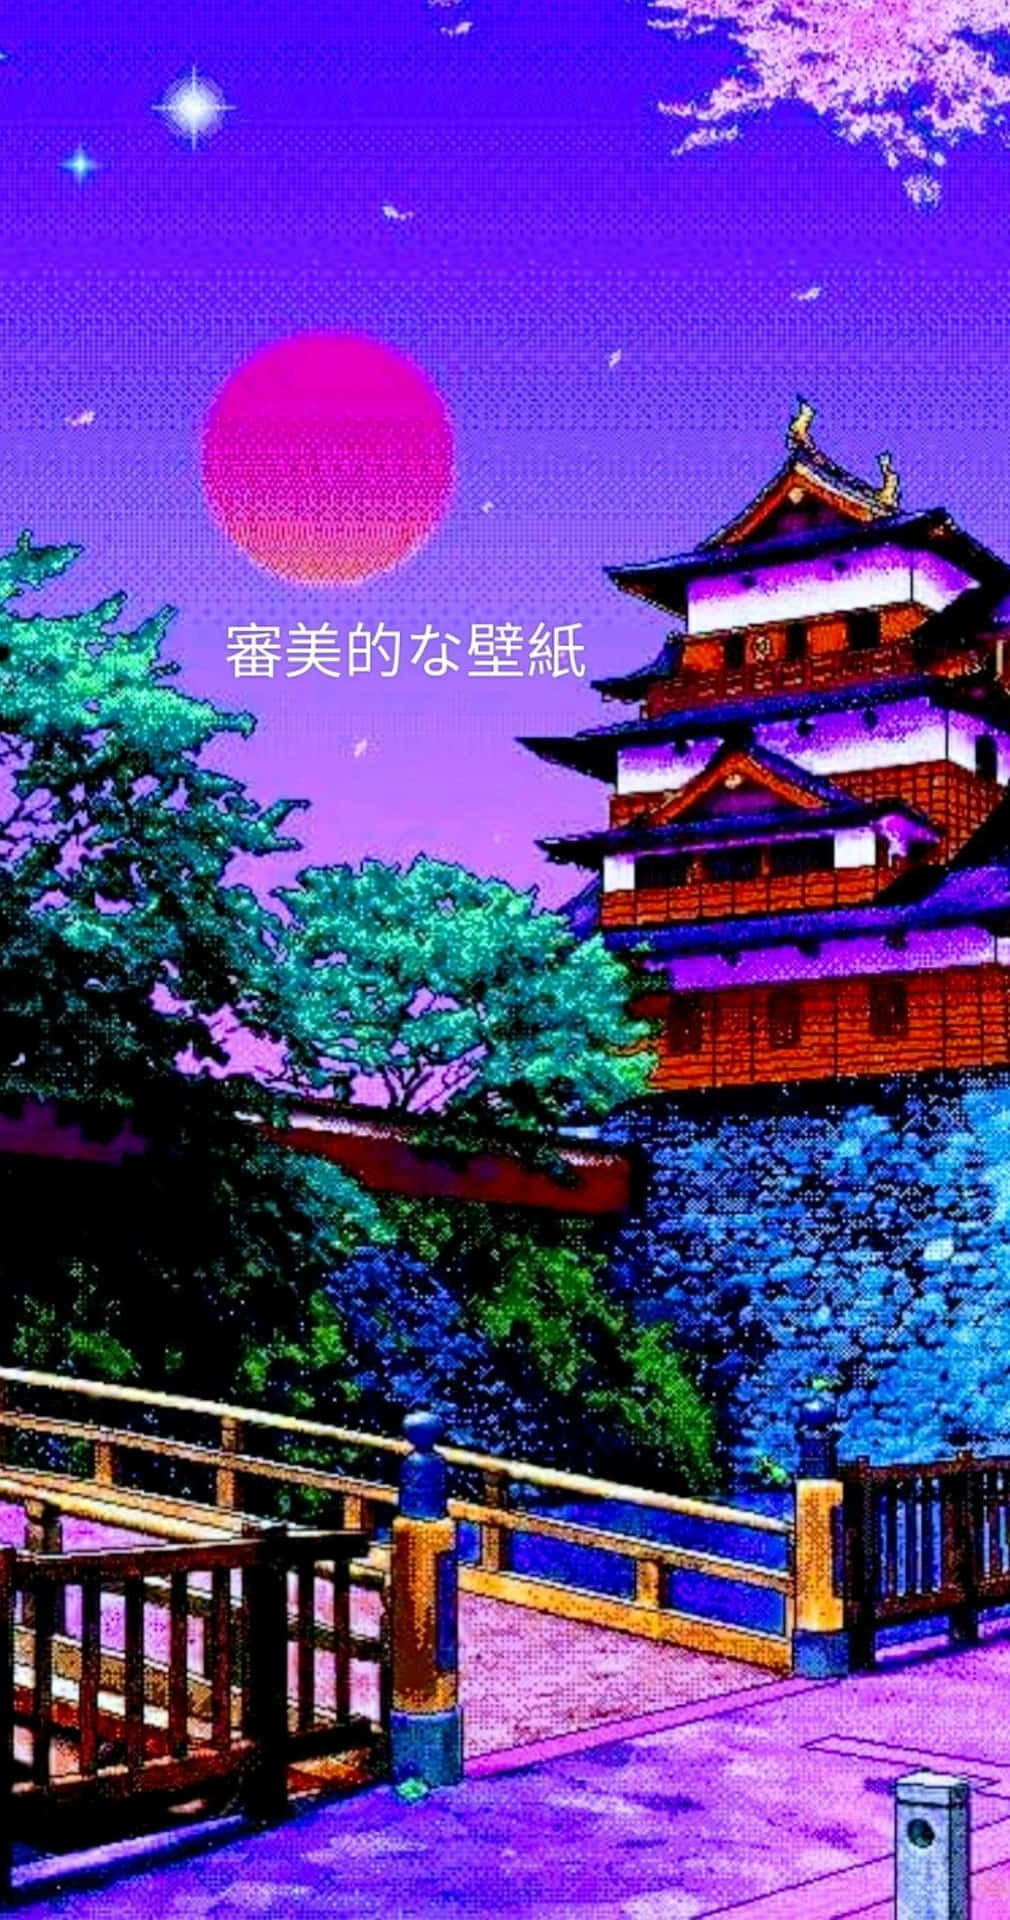 Unjuego De Estilo Japonés Con Un Cielo Morado Y Un Castillo. Fondo de pantalla